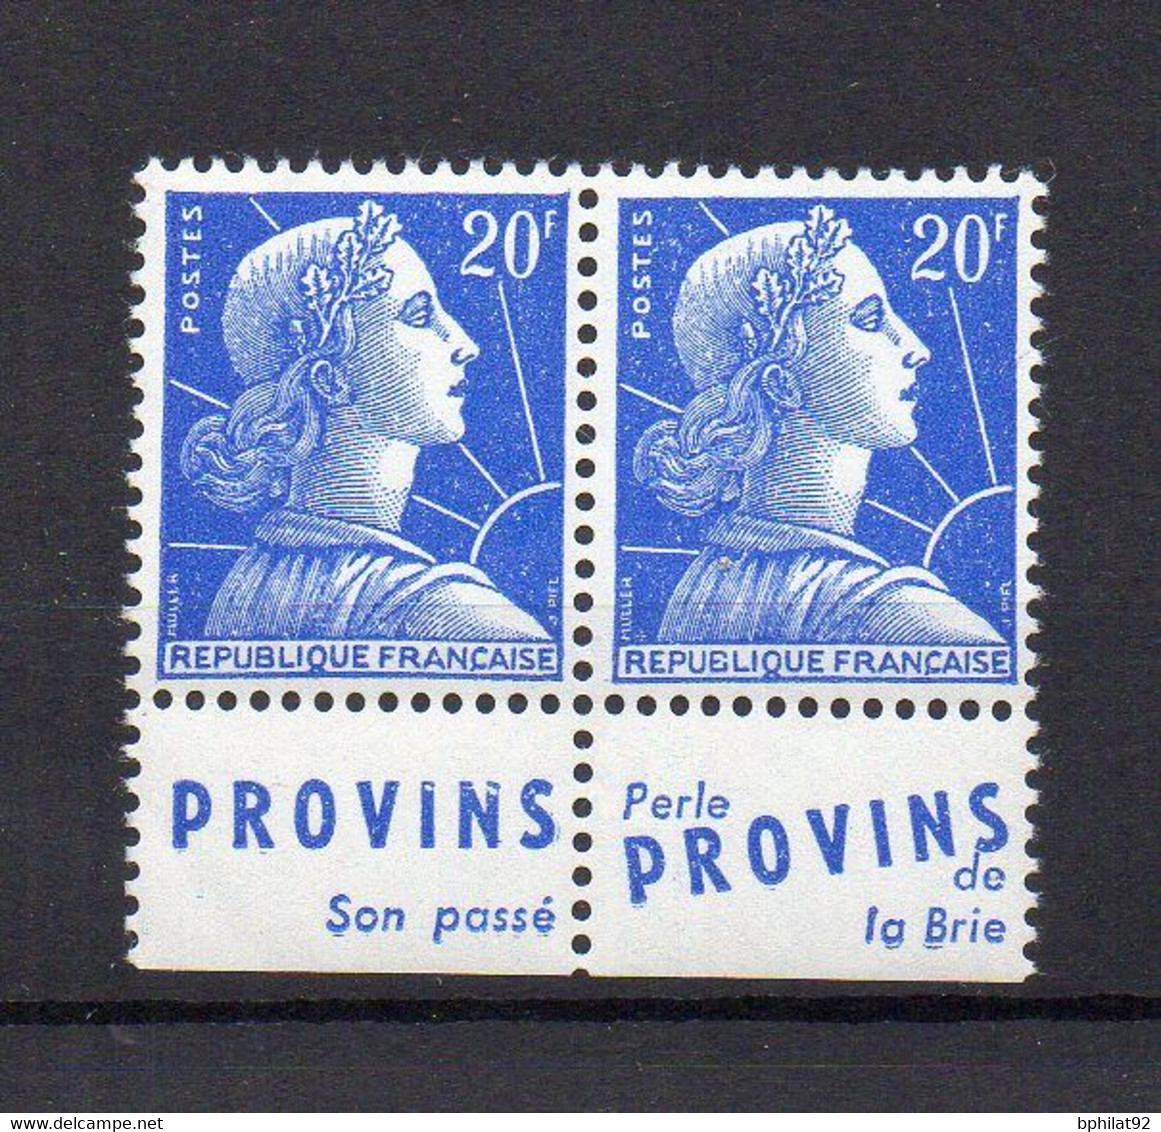 !!! 20 F MARIANNE DE MULLER TYPE I, PAIRE  AVEC PUBLICITES PROVINS NEUVE ** - Unused Stamps